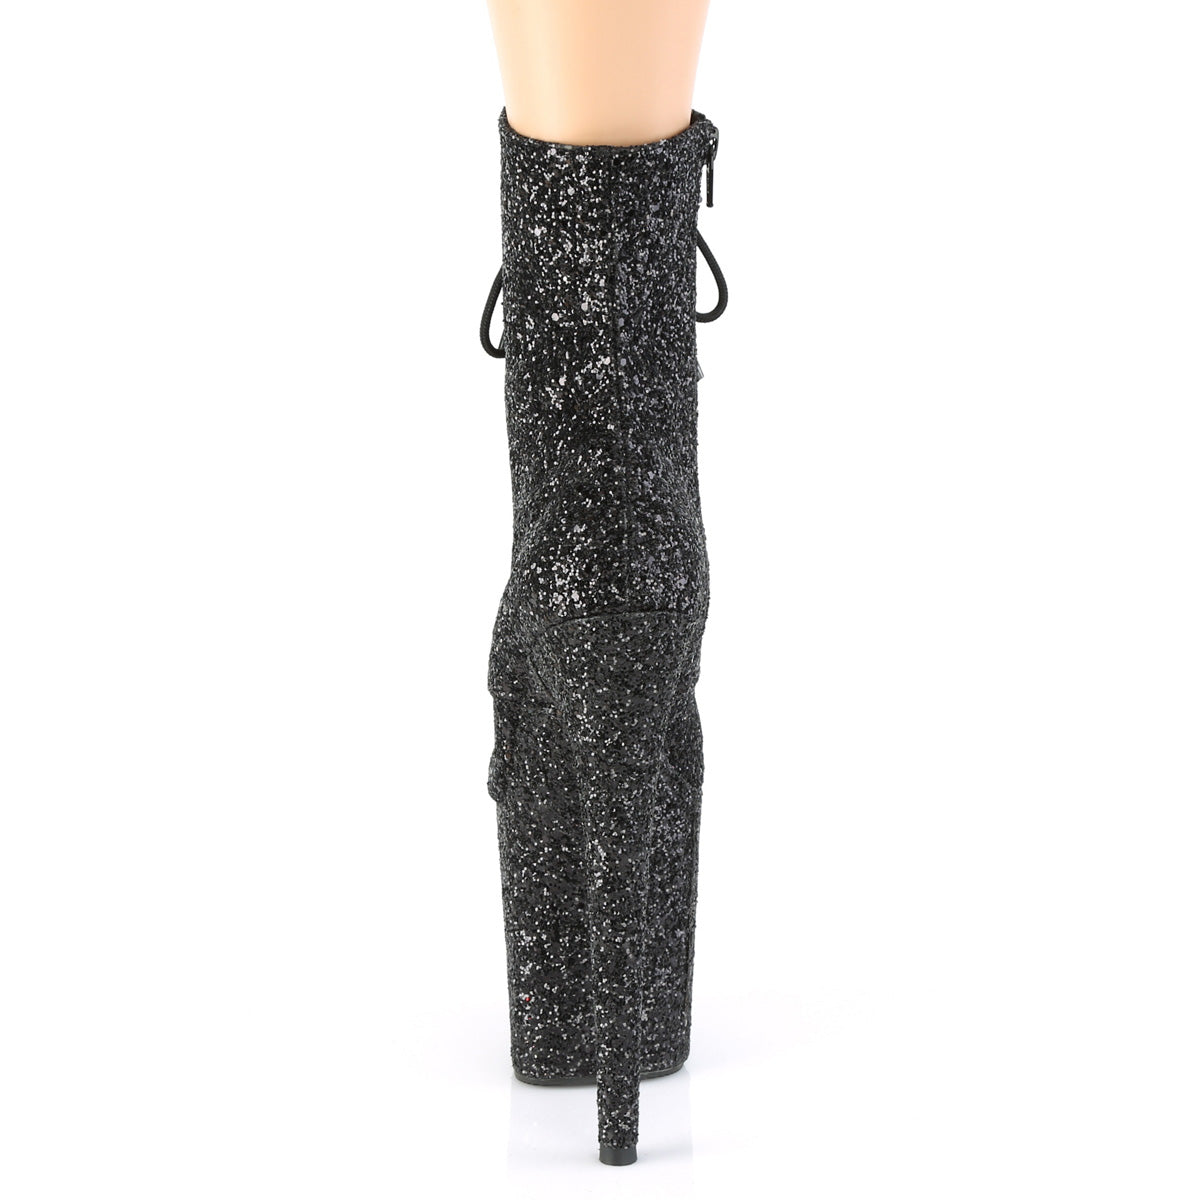 FLAMINGO-1020GWR 8" Heel Black Glitter Pole Dancer -Pleaser- Sexy Shoes Fetish Footwear